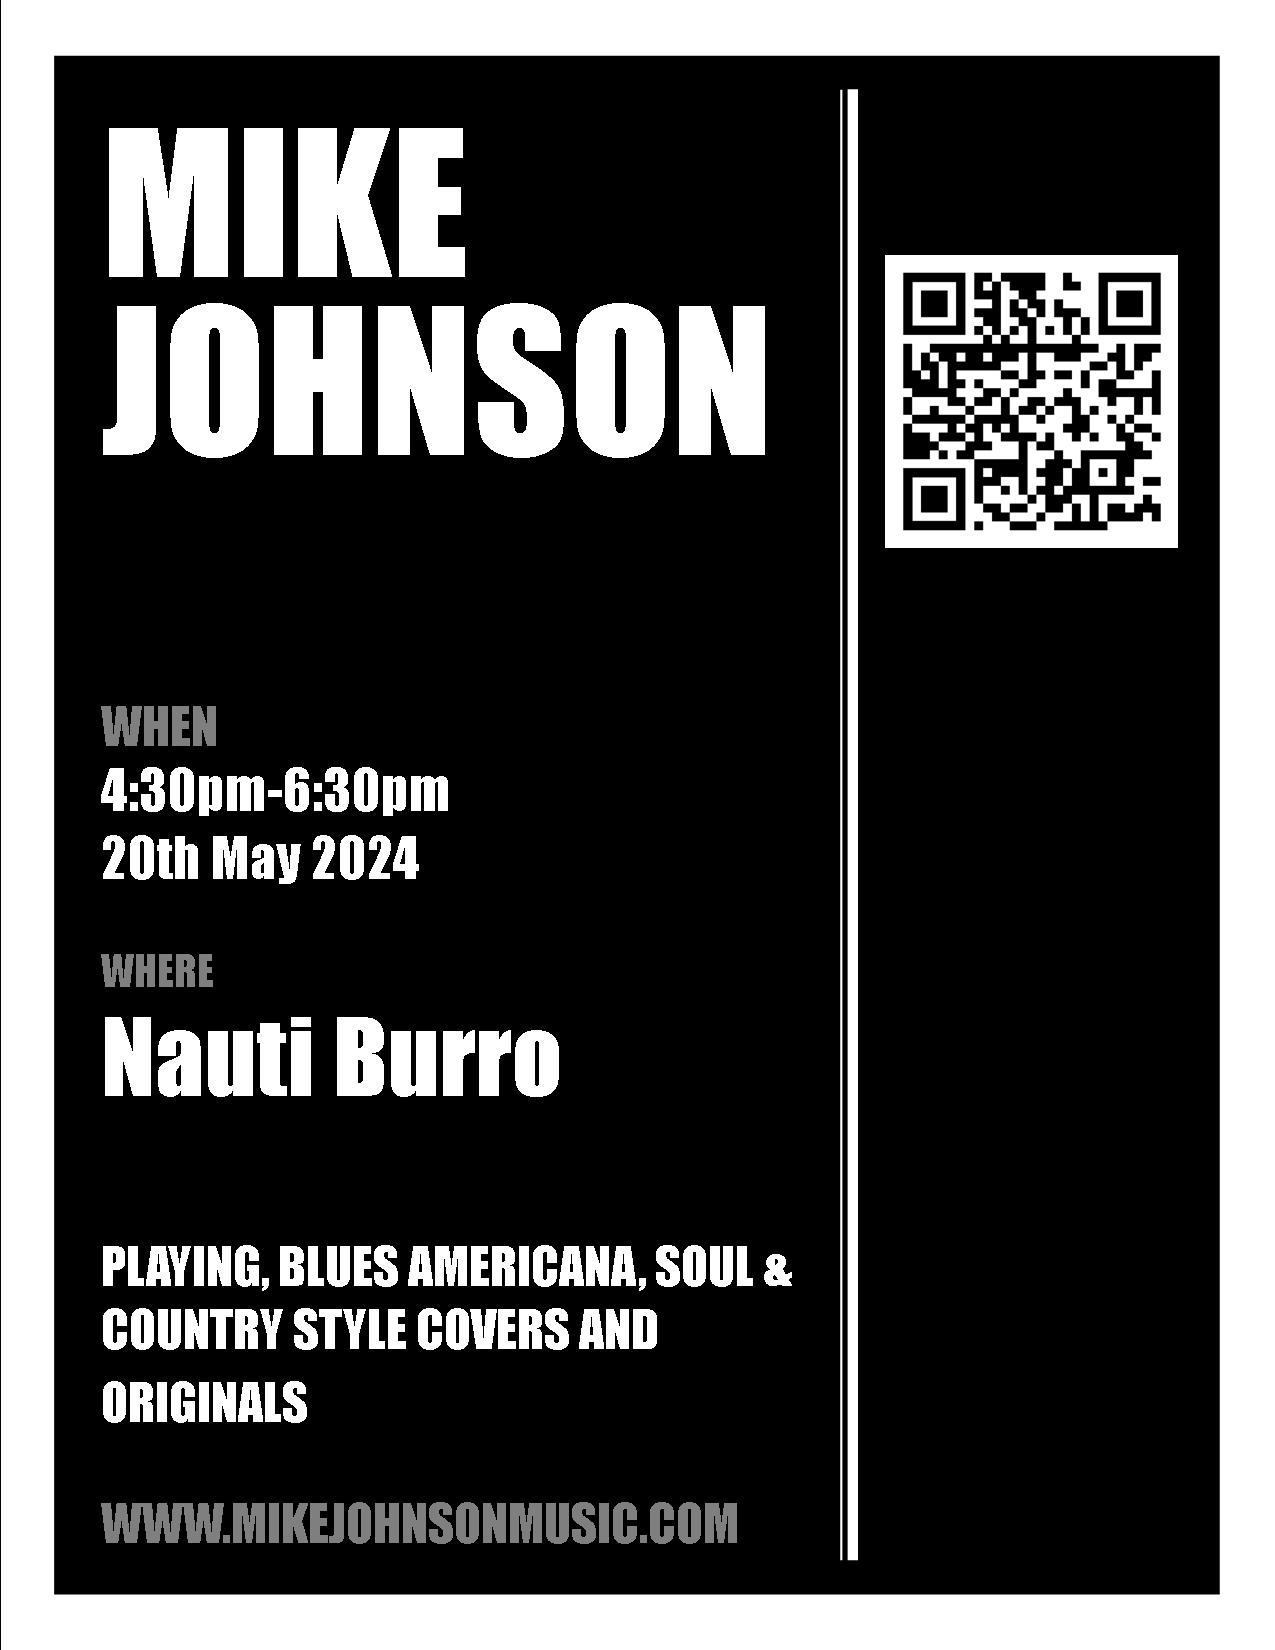 Mike Johnson at Nauti Burro